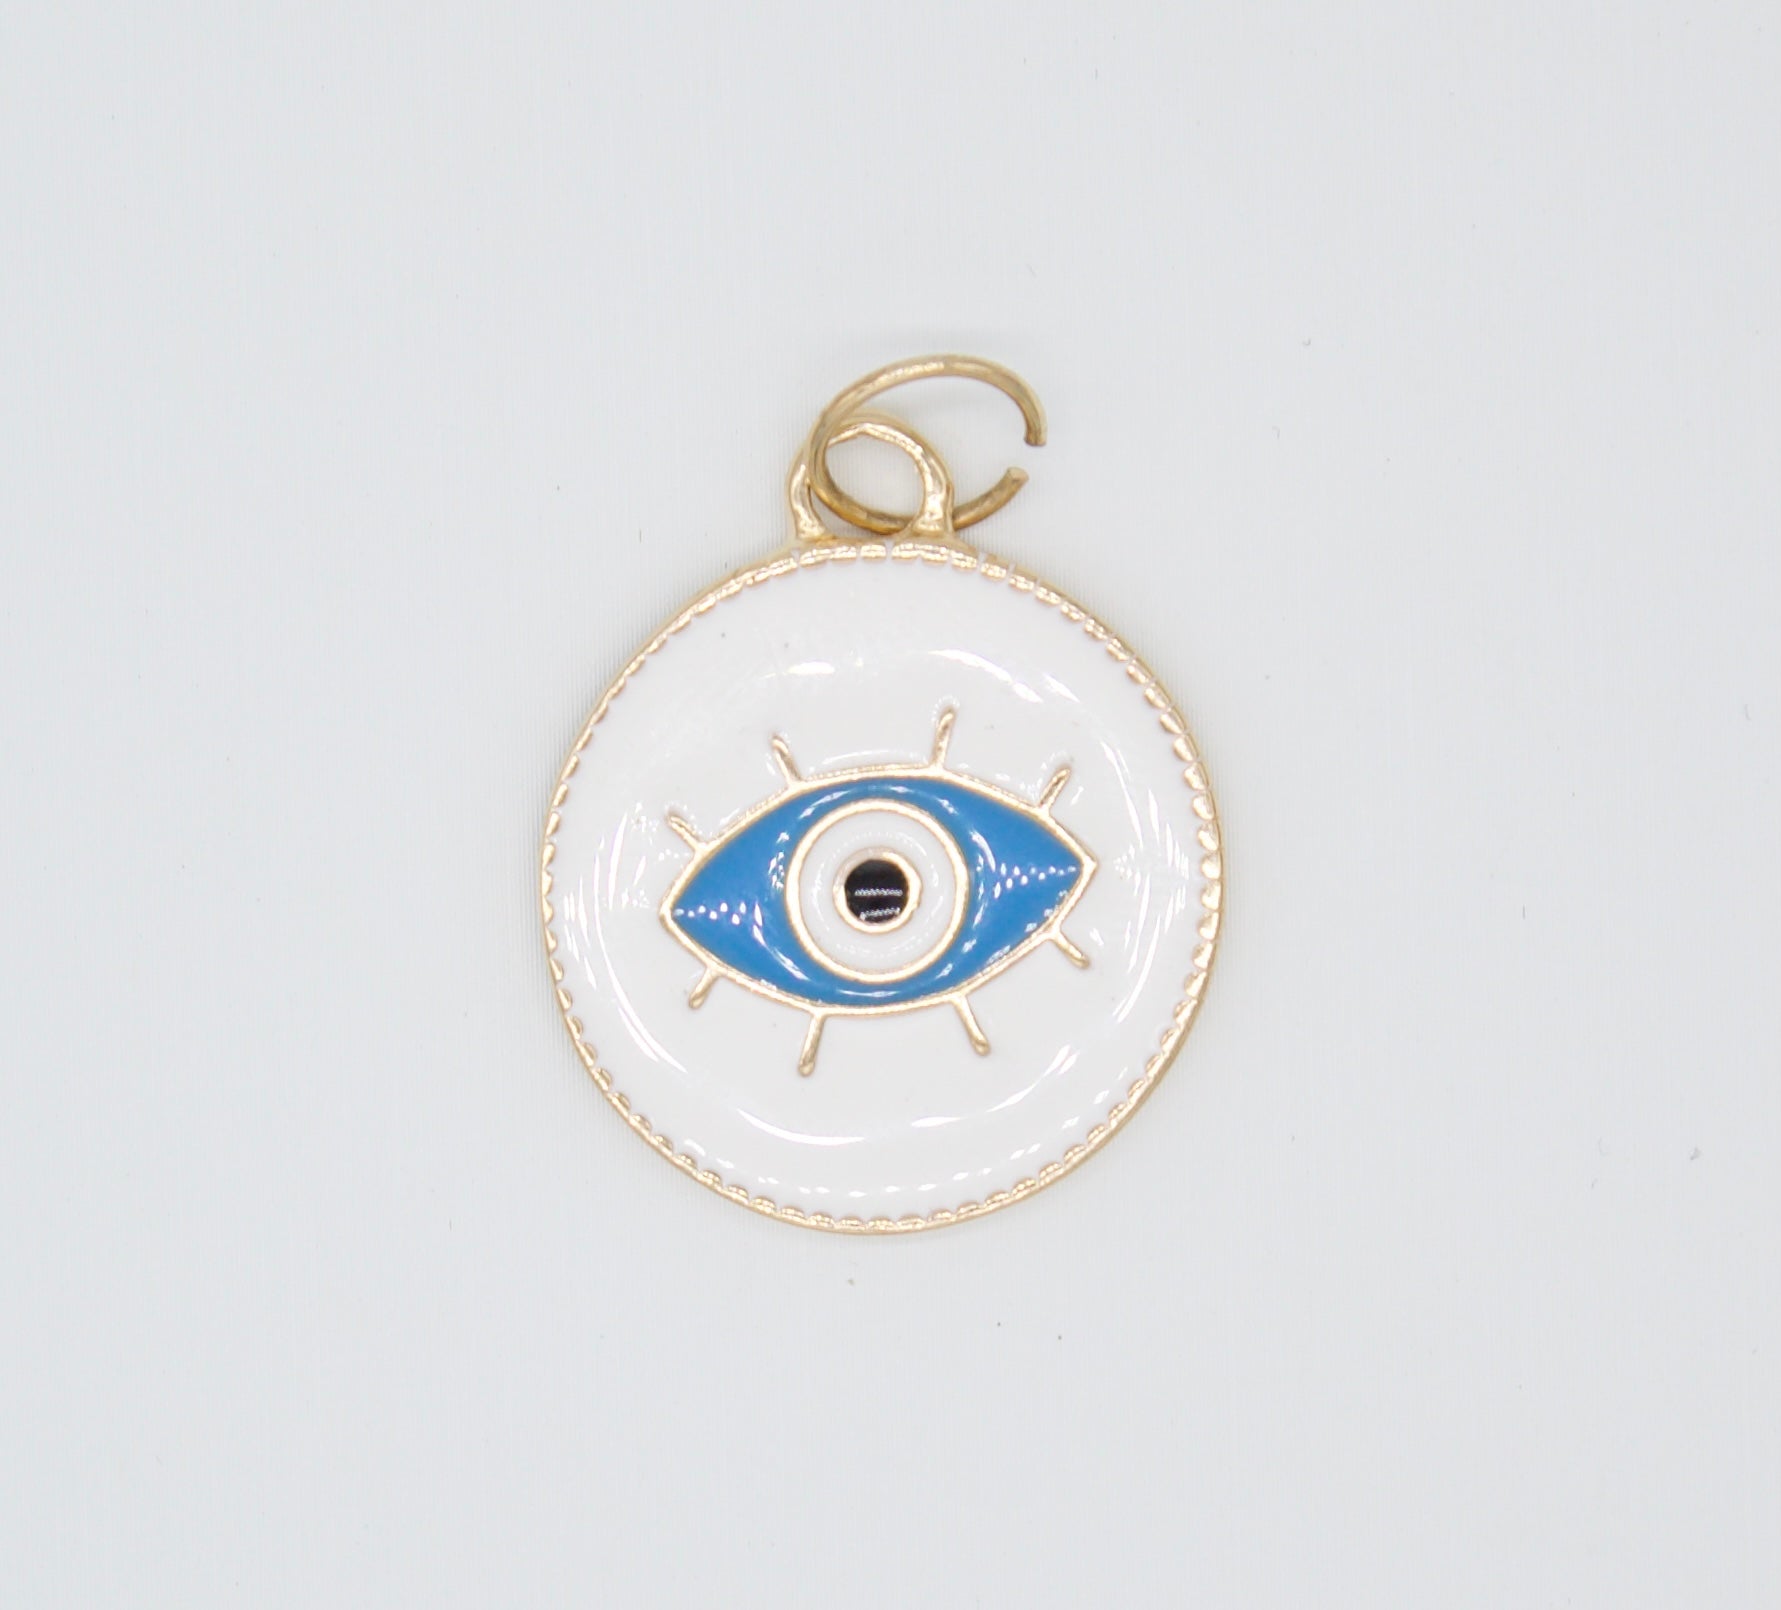 18K Gold Filled Enamel Medallion Evil Eye Pendant Charm (A34)